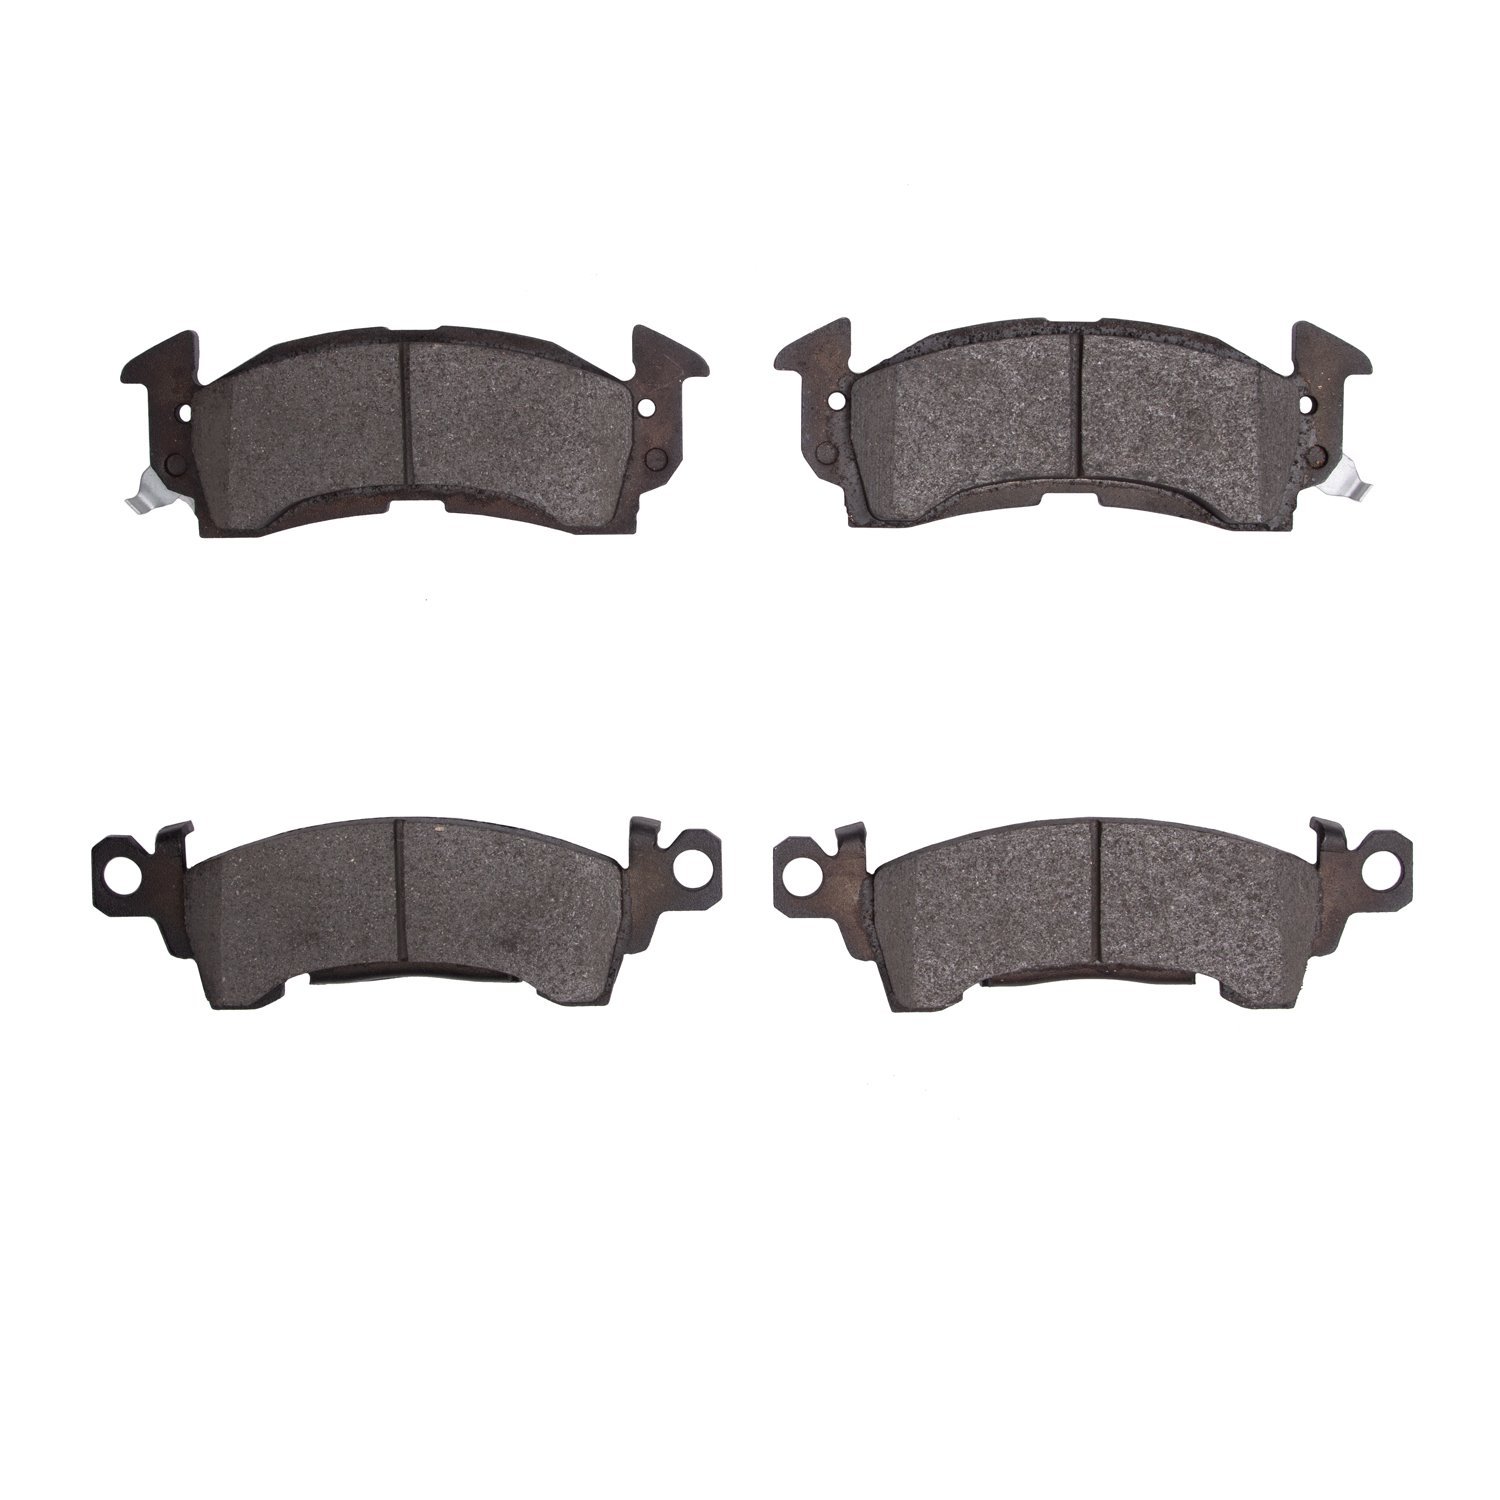 Ceramic Brake Pads, 1967-2002 Fits Multiple Makes/Models, Position: Front